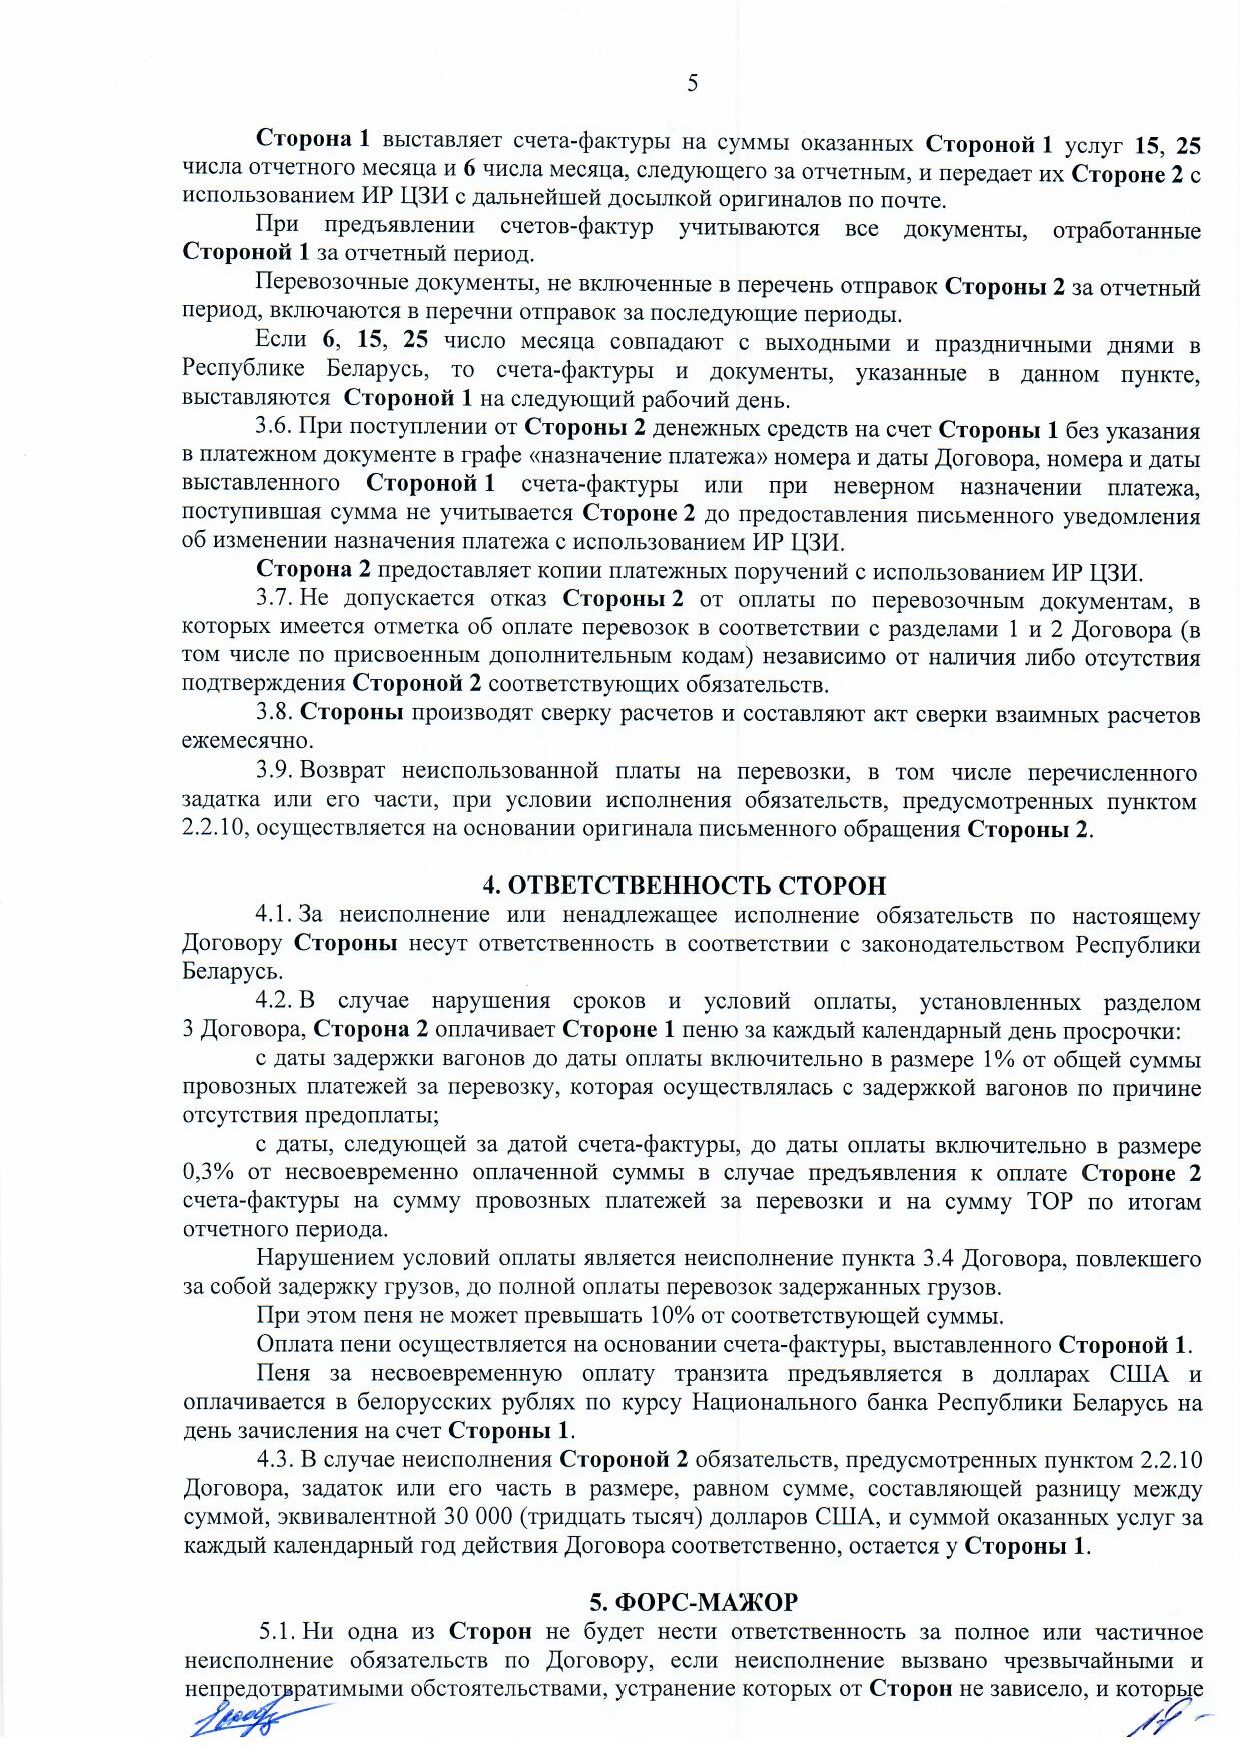 Договор между БЖД и ООО «Логистик Энерджи» от 29.11.2021 № ИРЦ/Ю-710 (Страница 5)